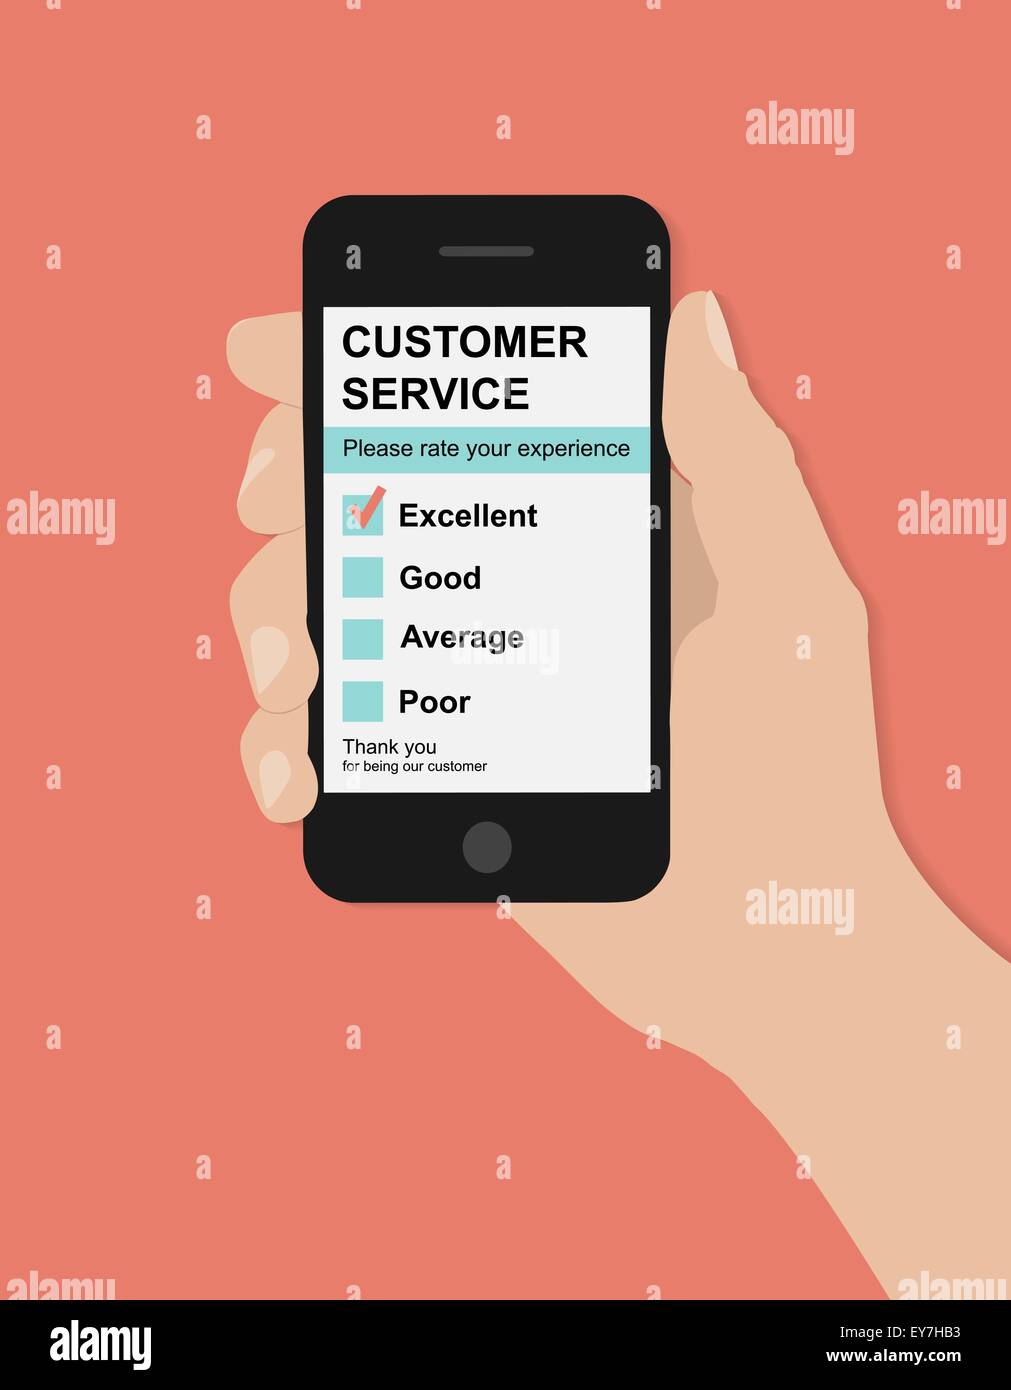 Flachen Hand hält Smartphone mit Serviceumfrage zur Kundenzufriedenheit auf rotem Grund Stock Vektor